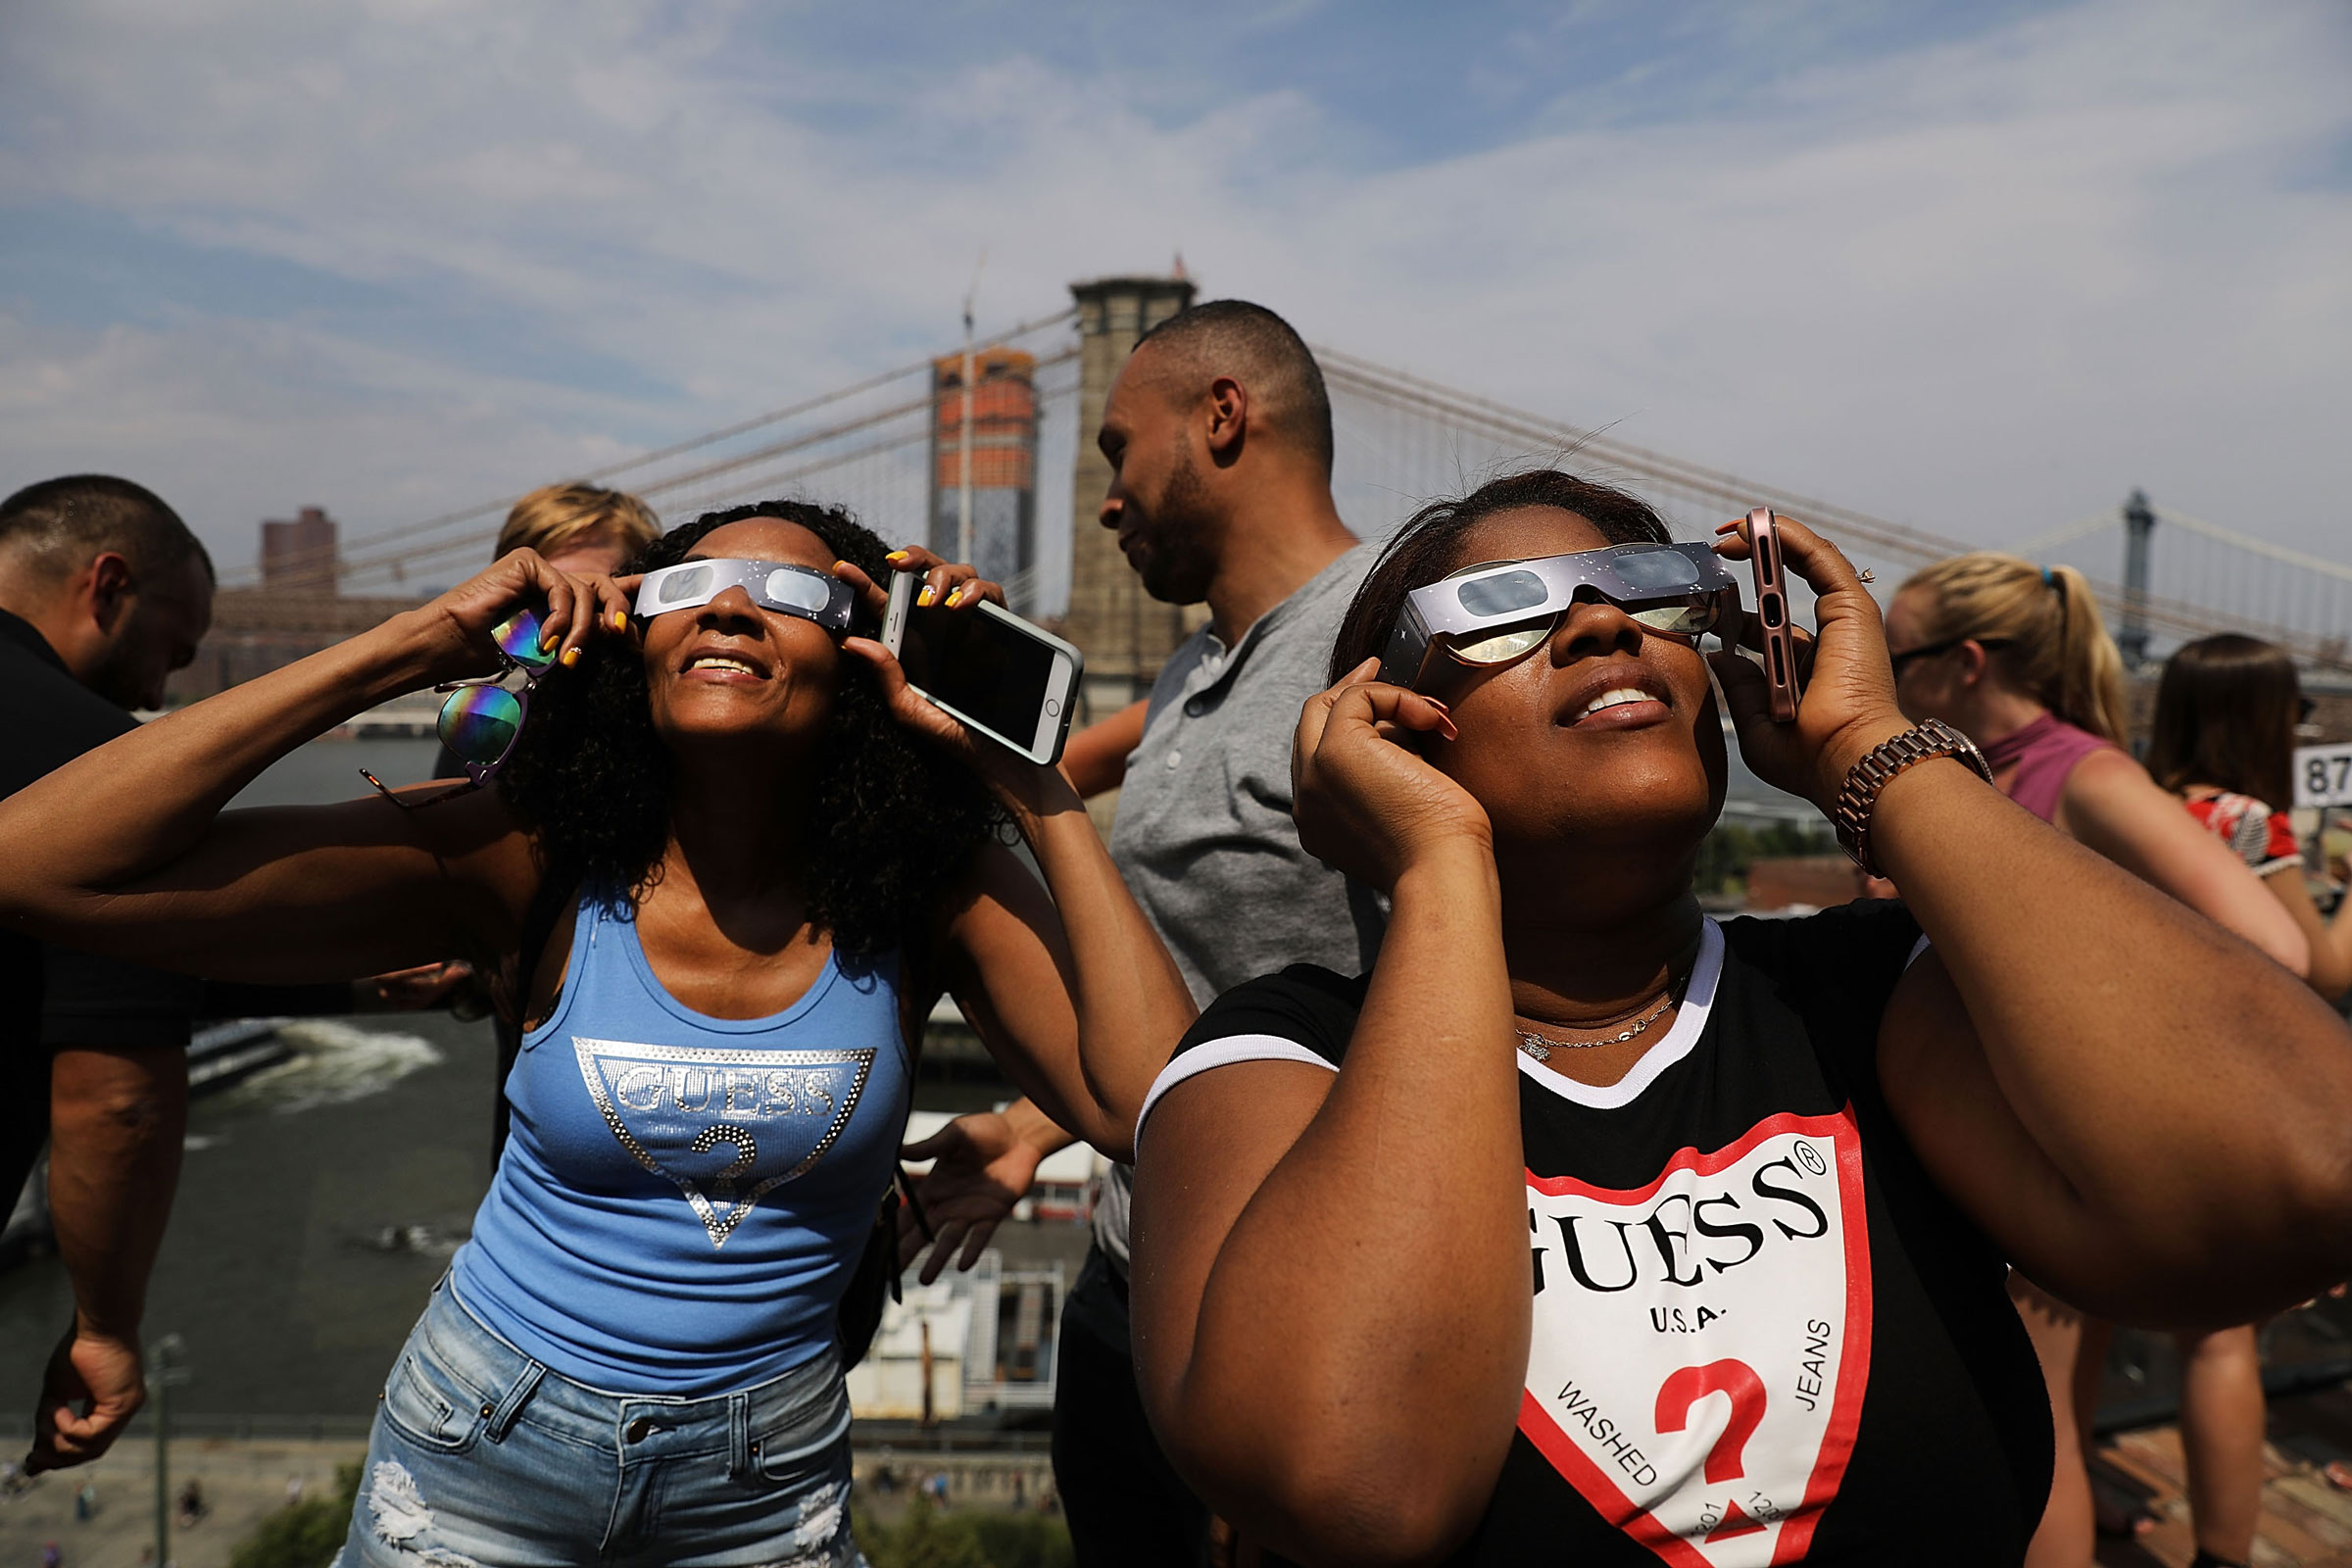 在纽约布鲁克林桥1号酒店的天台上,人们于2017年8月21日观看了部分日食。